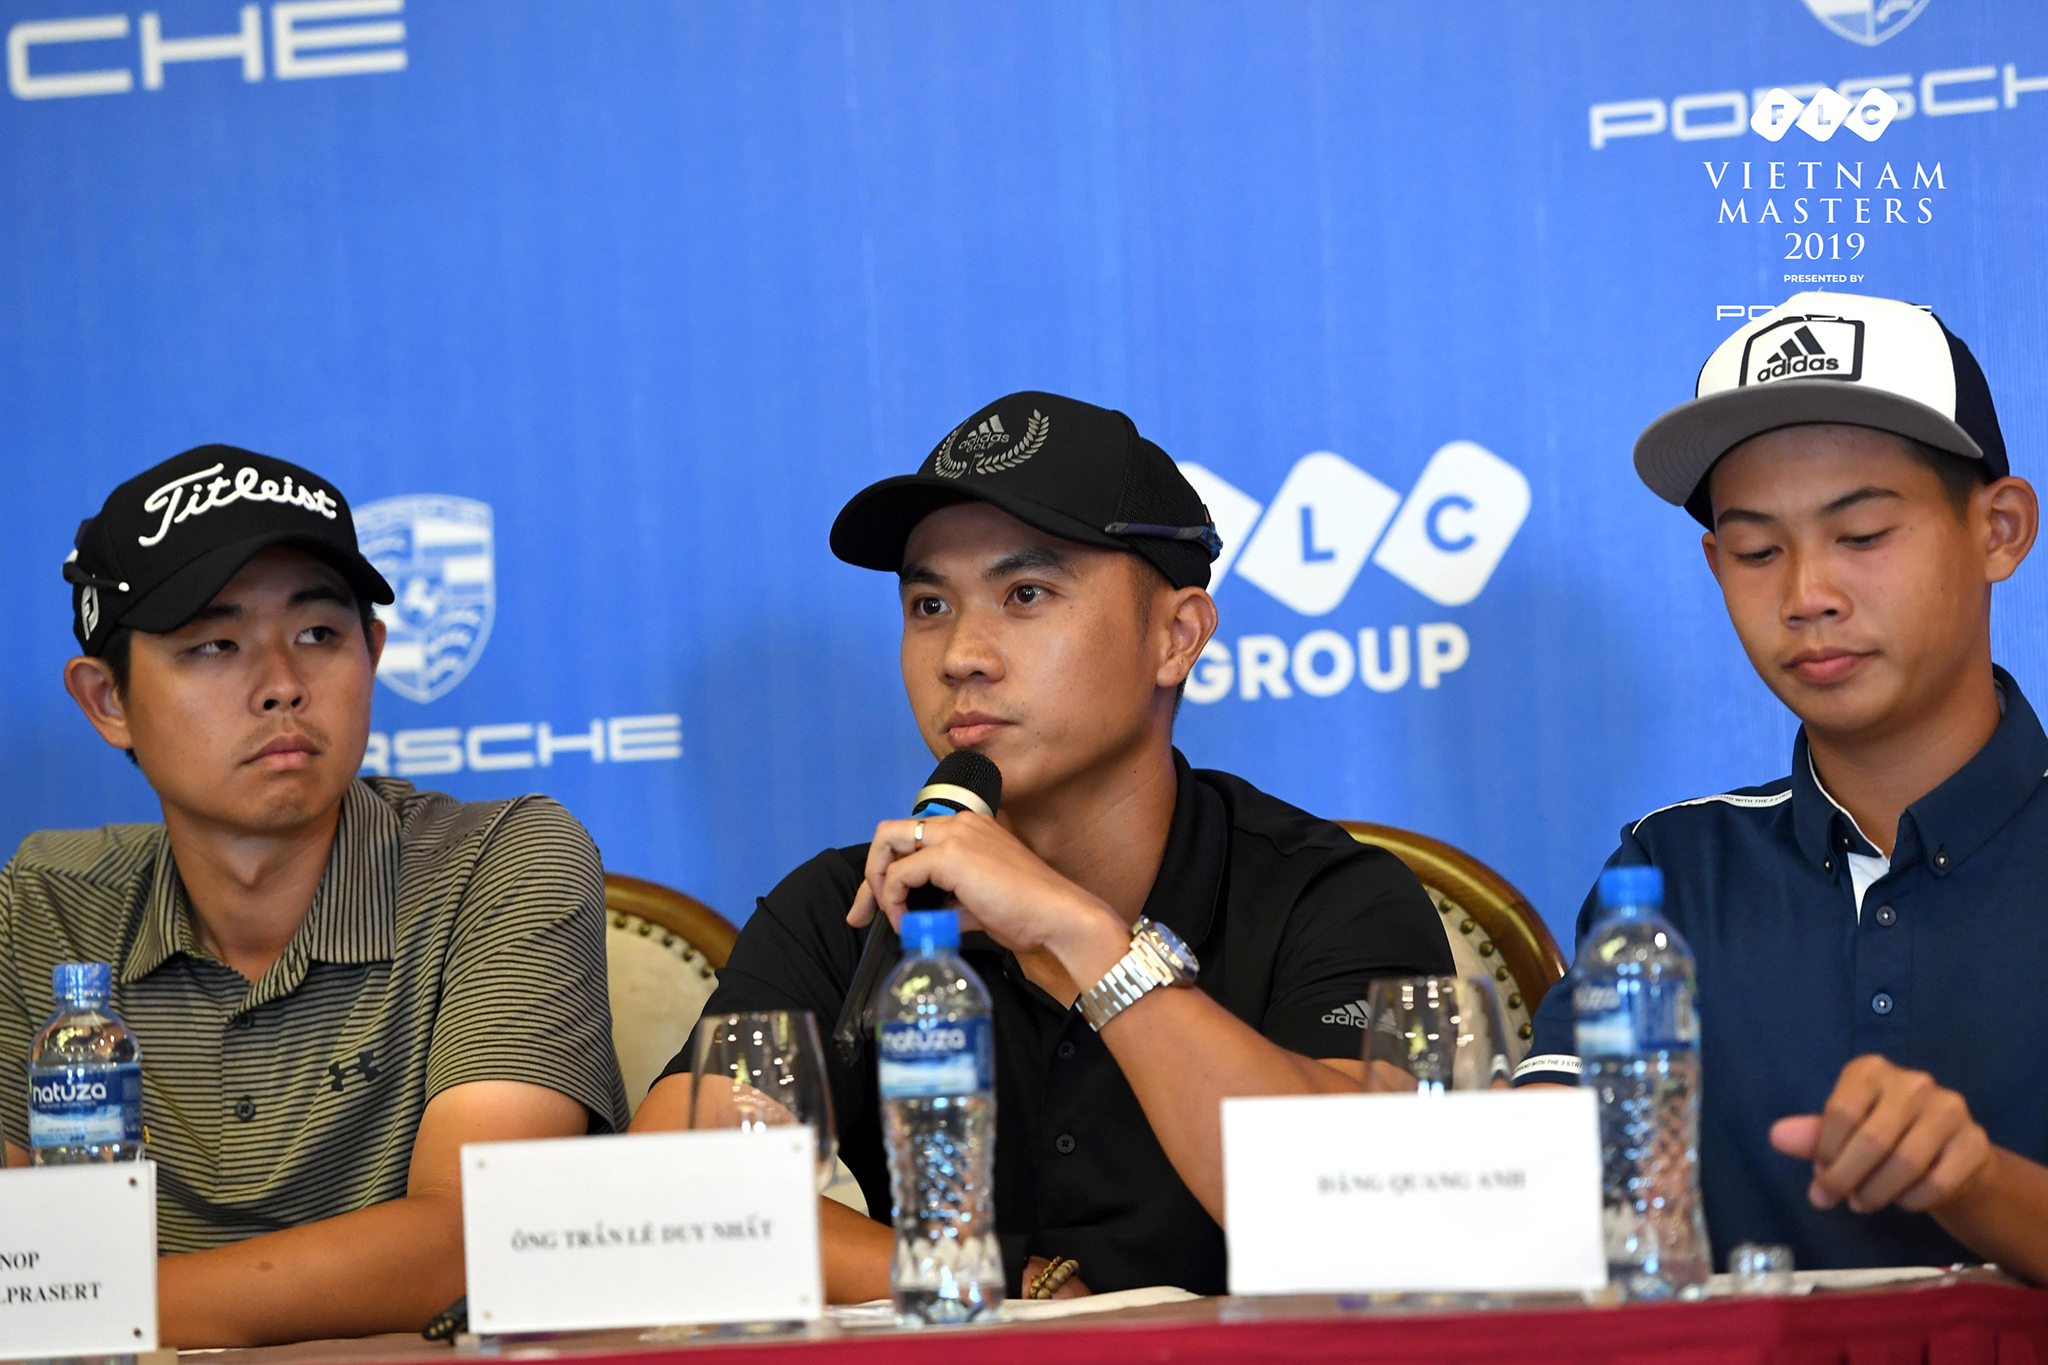 Trần Lê Duy Nhất: Tôi không đặt mục tiêu quá cao tại FLC Vietnam Masters 2019.